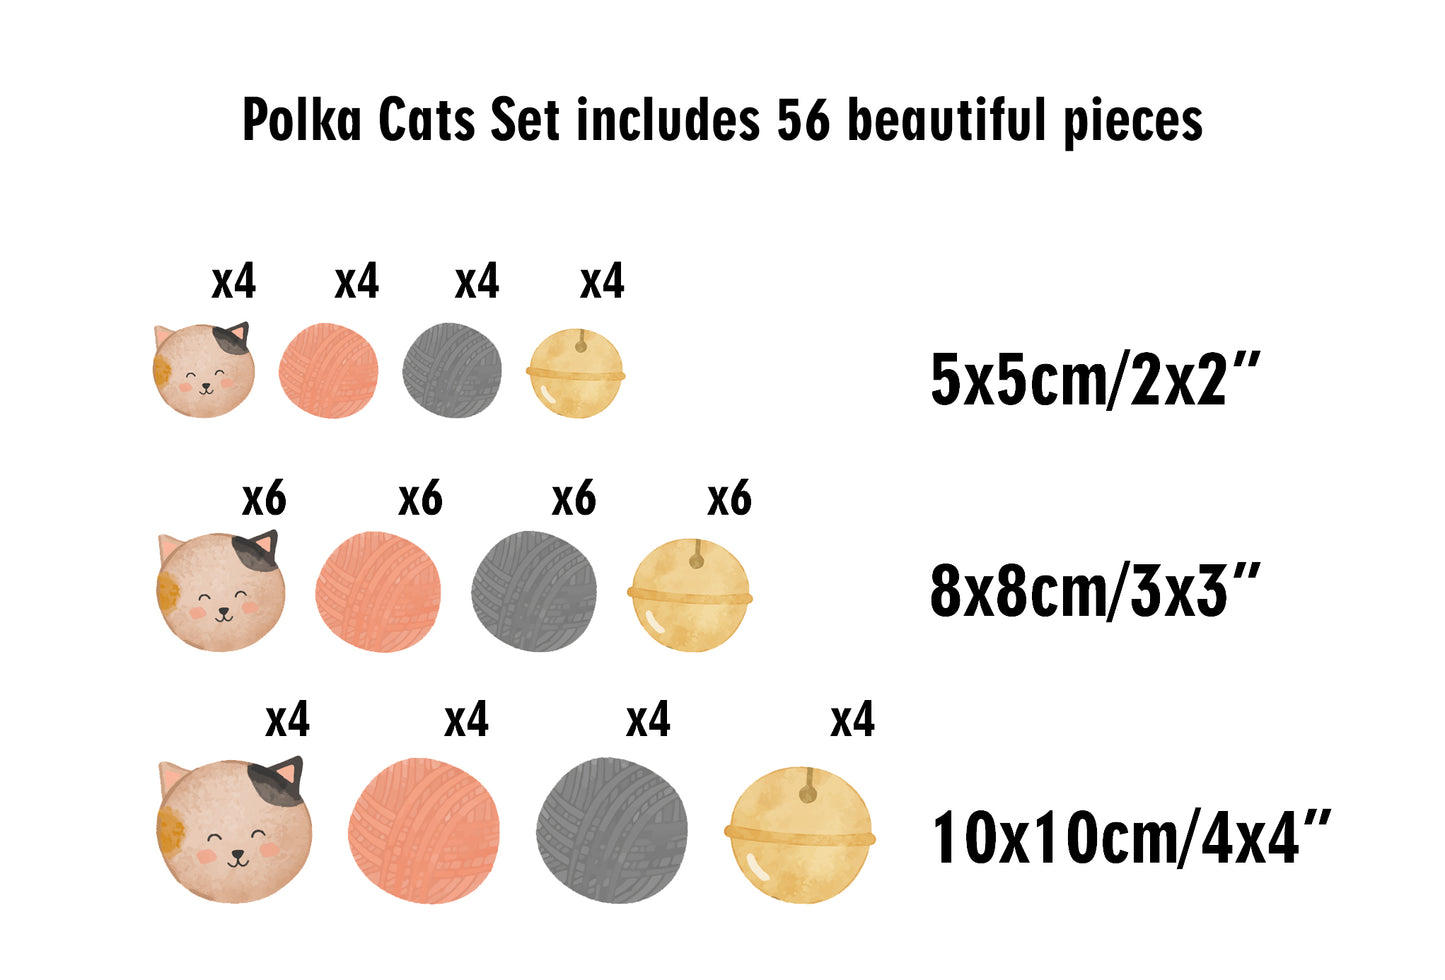 Polka Cats